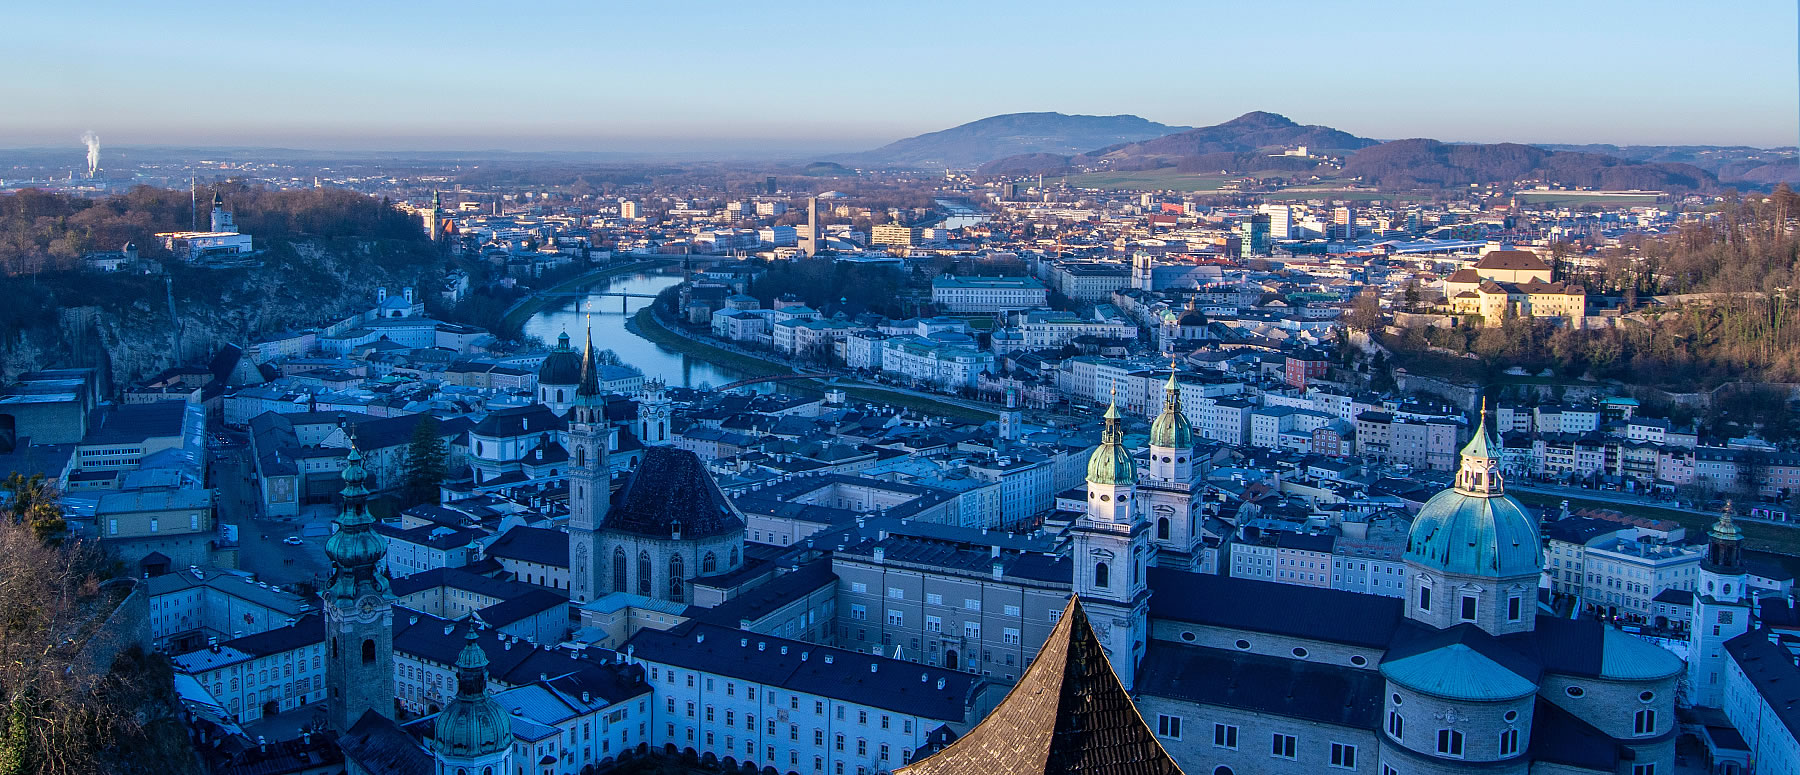 Panorama, Salzburg Stadt mit Blick aufs Umland